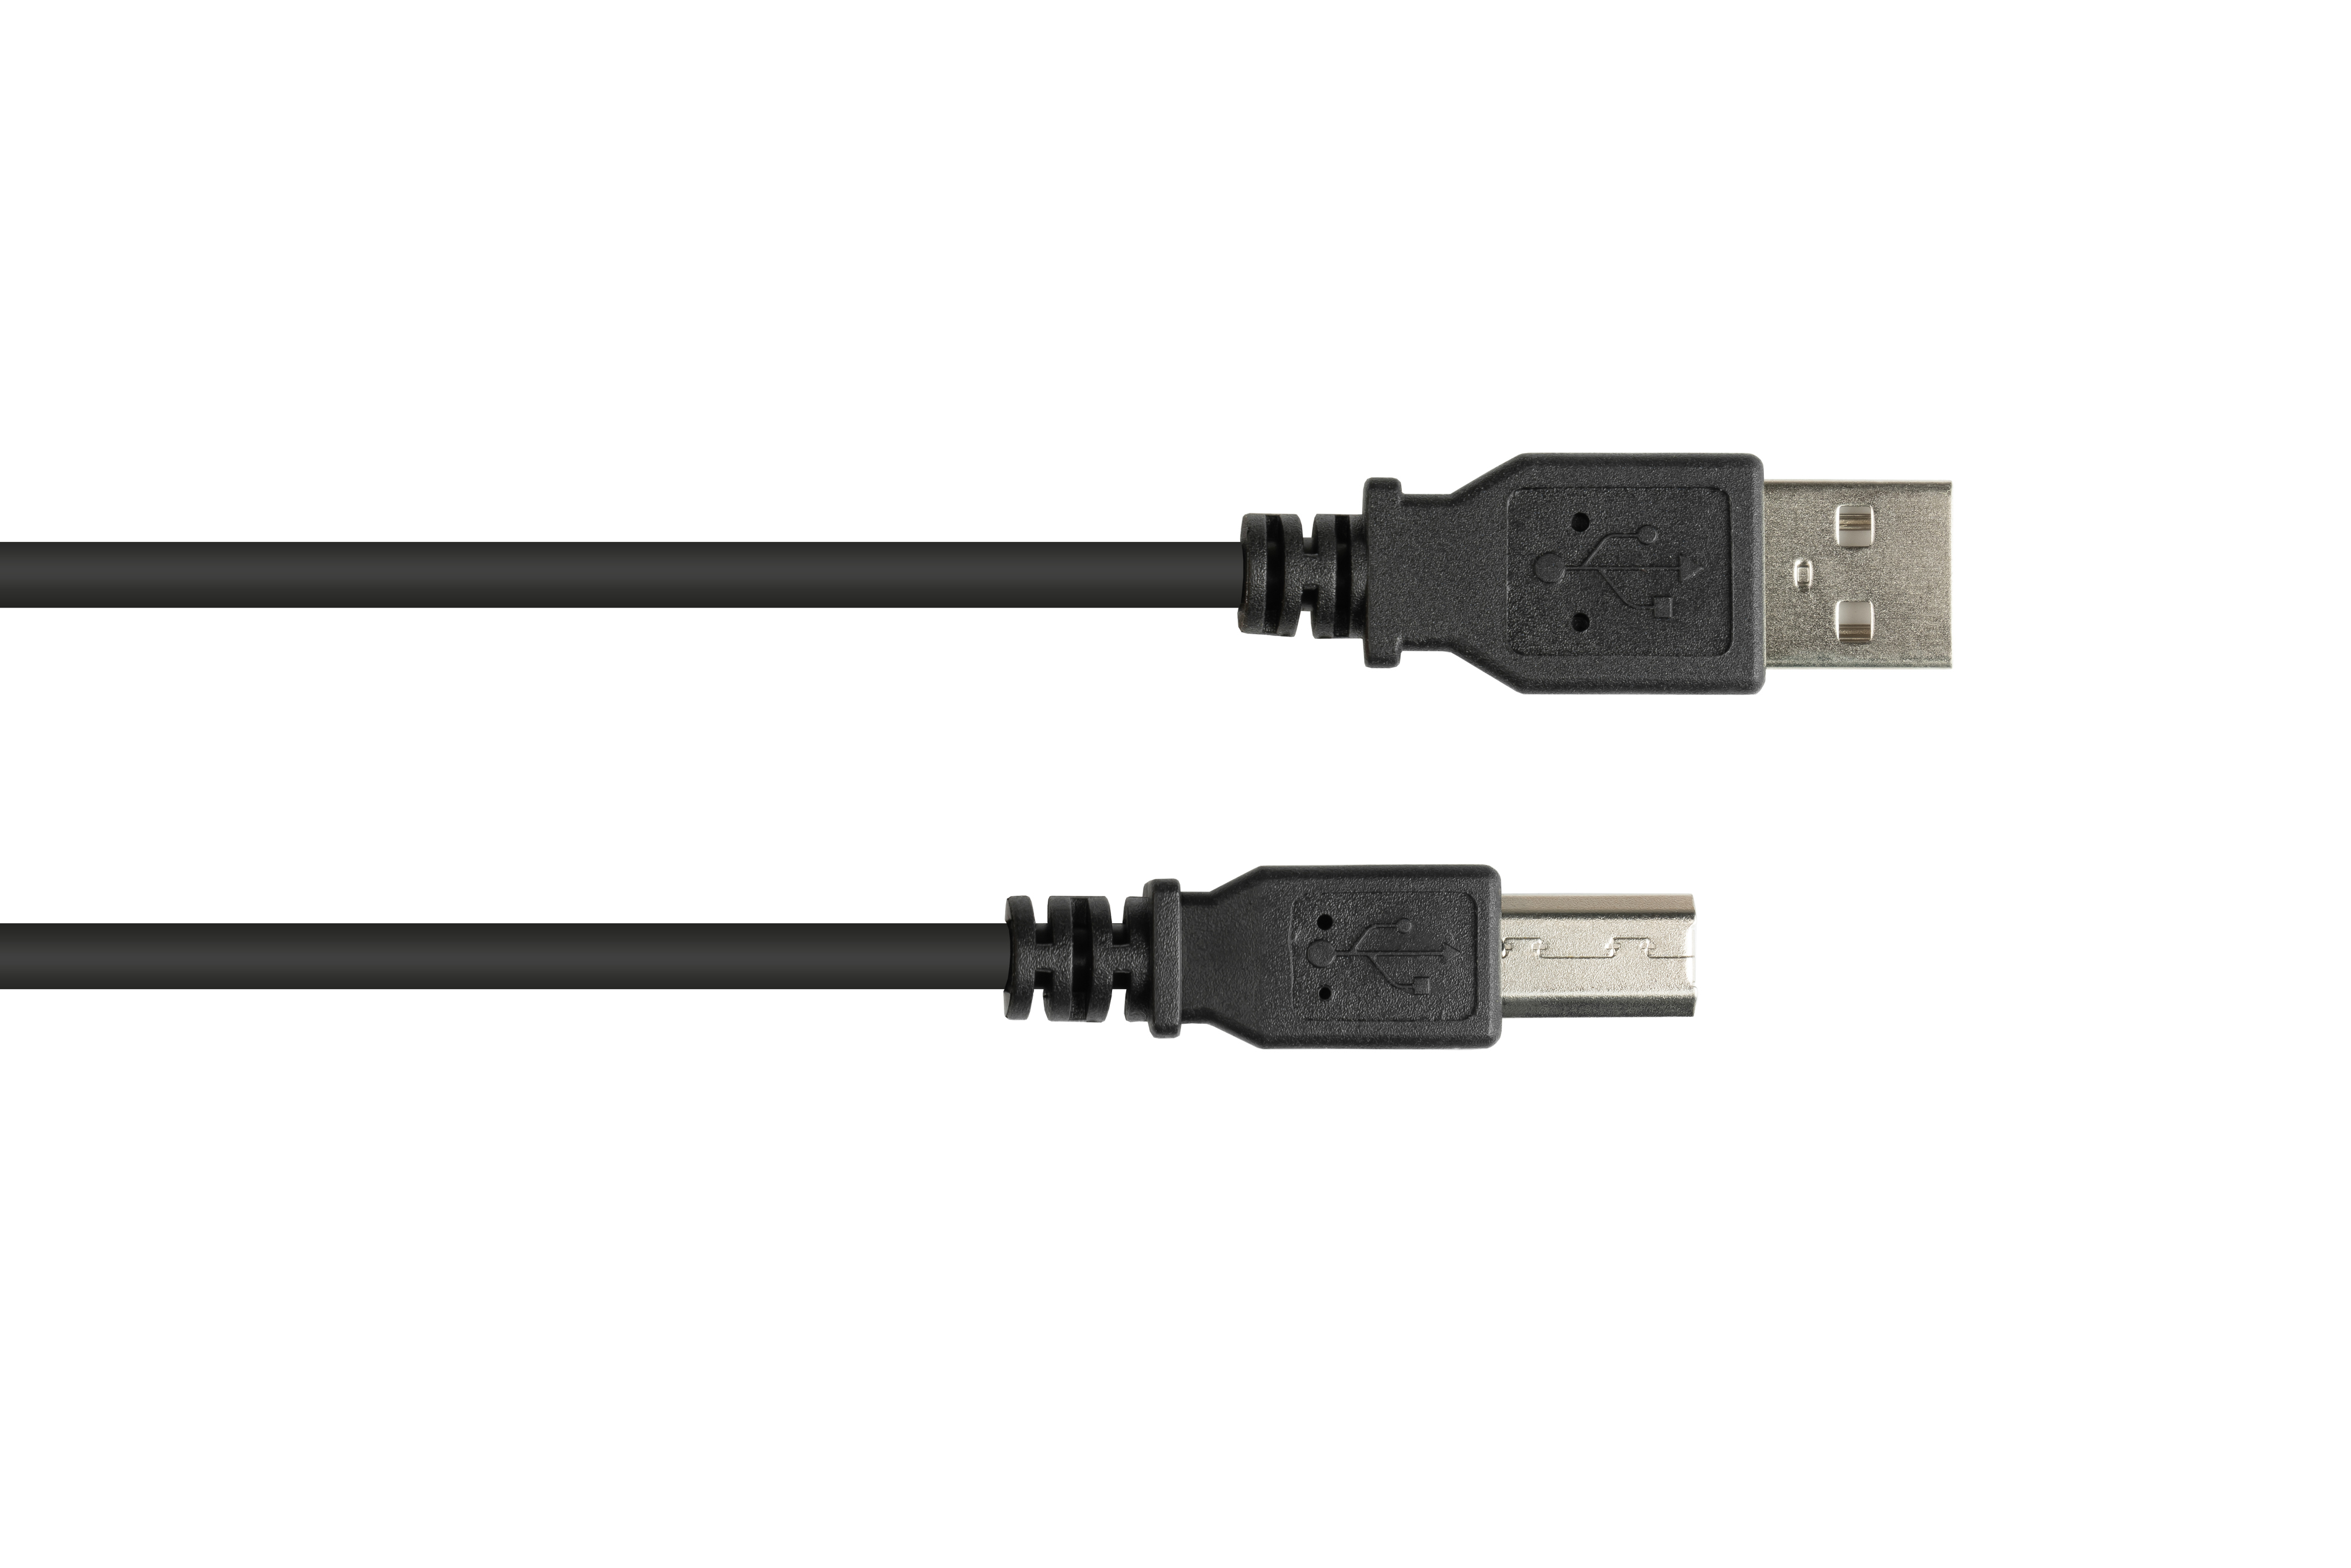 2.0 an B, USB Anschlusskabel A schwarz Stecker KABELMEISTER Stecker